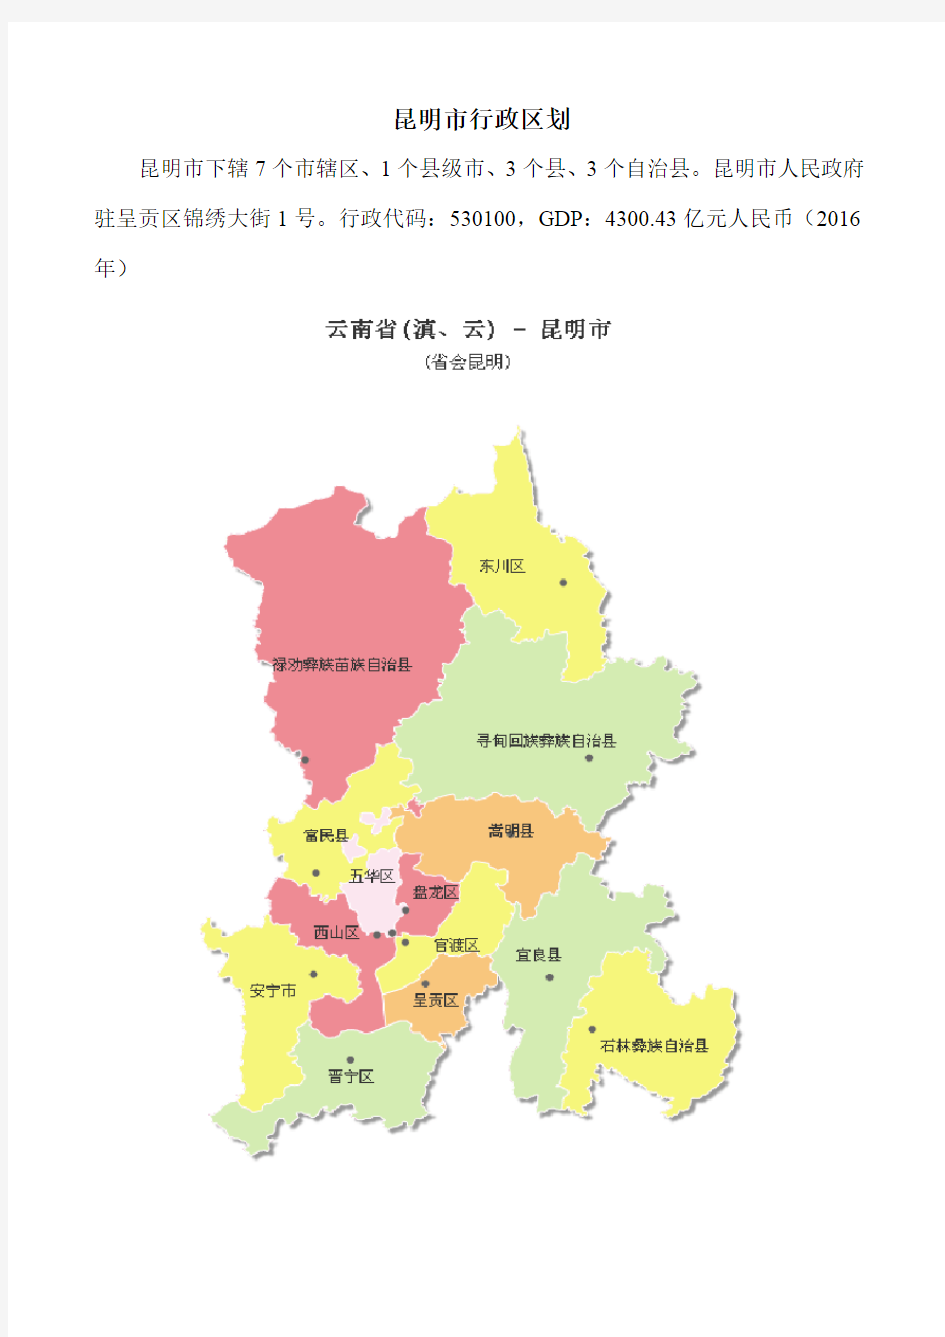 昆明市行政区划(带图)